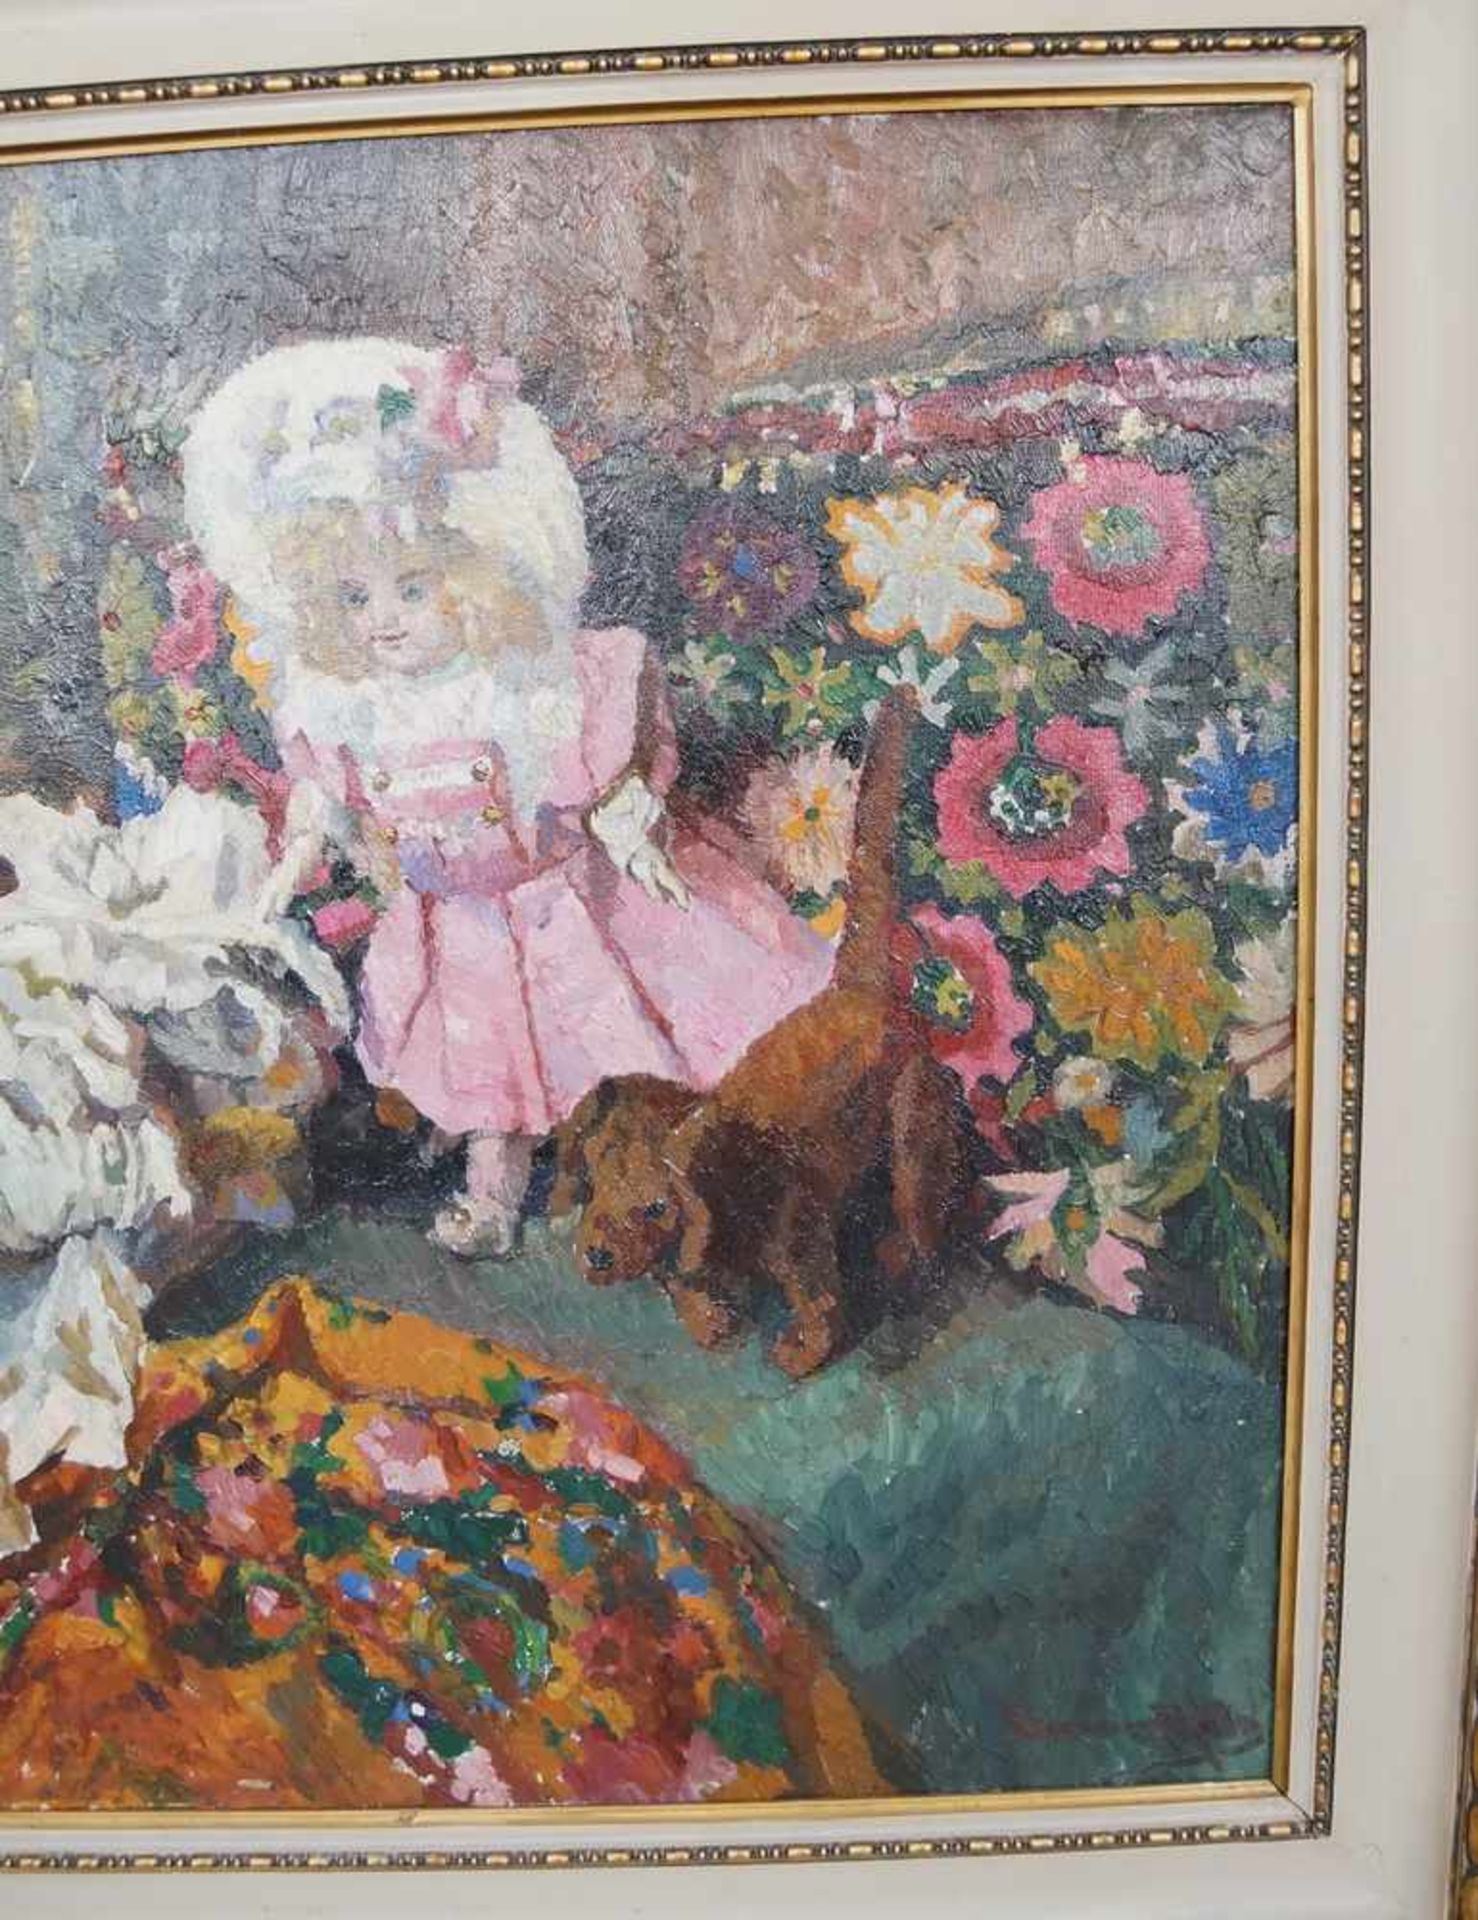 Liebliches Gemälde in Öl auf Leinwand, gerahmt, Kind mit Teddybär und Hund, 103x111cm - Bild 4 aus 6